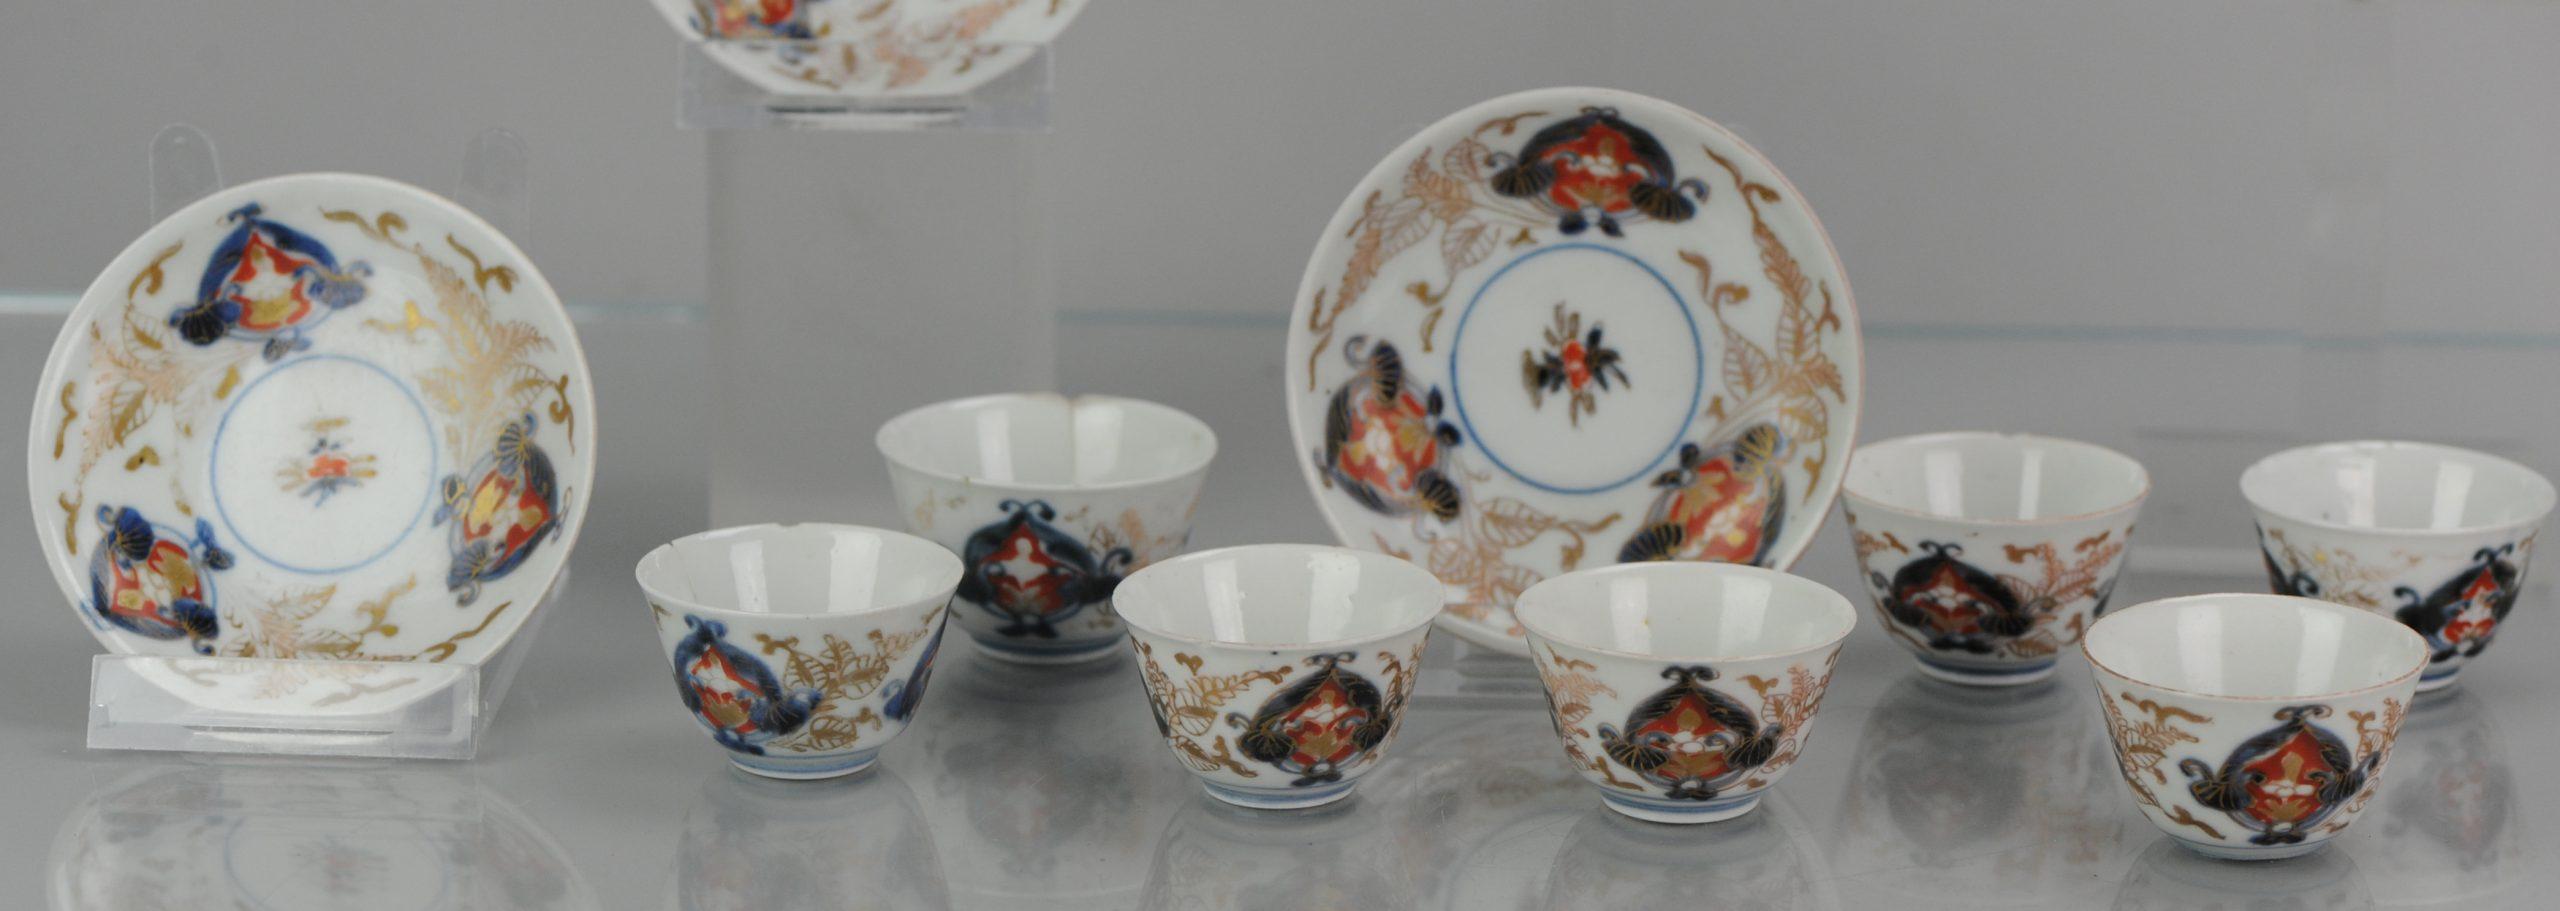 Japanese Porcelain Set of Tea Cup Bowl and Saucer Beaker Saucer Imari Edo Period For Sale 5